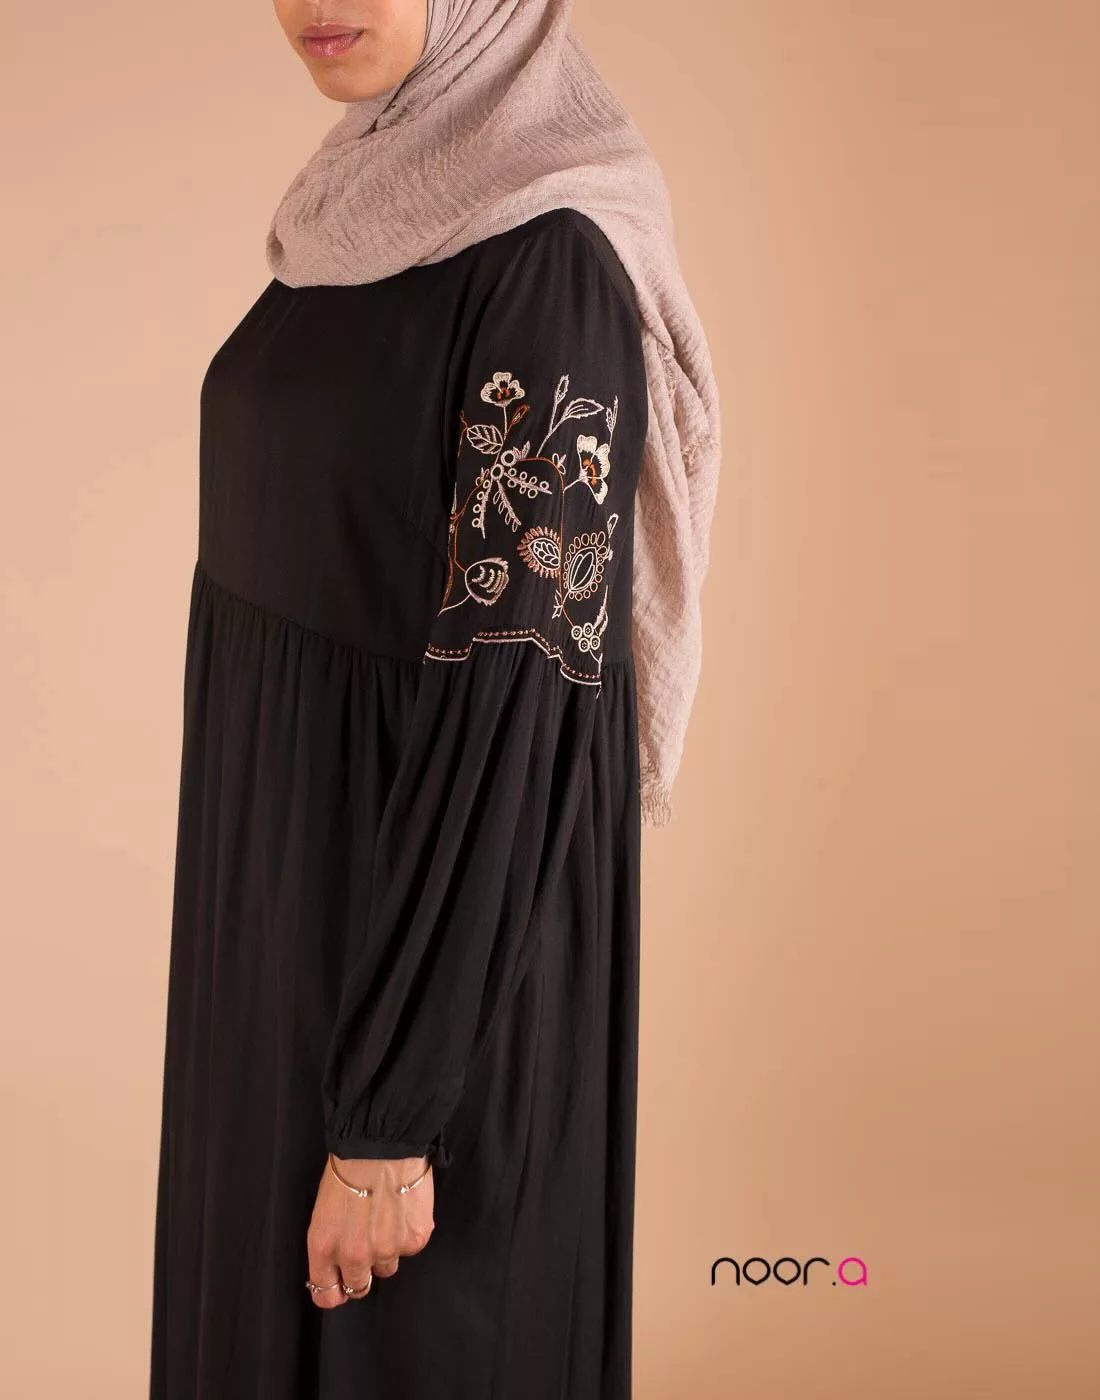 Noor-a boutique de prêt-à-porter pour femme musulmane